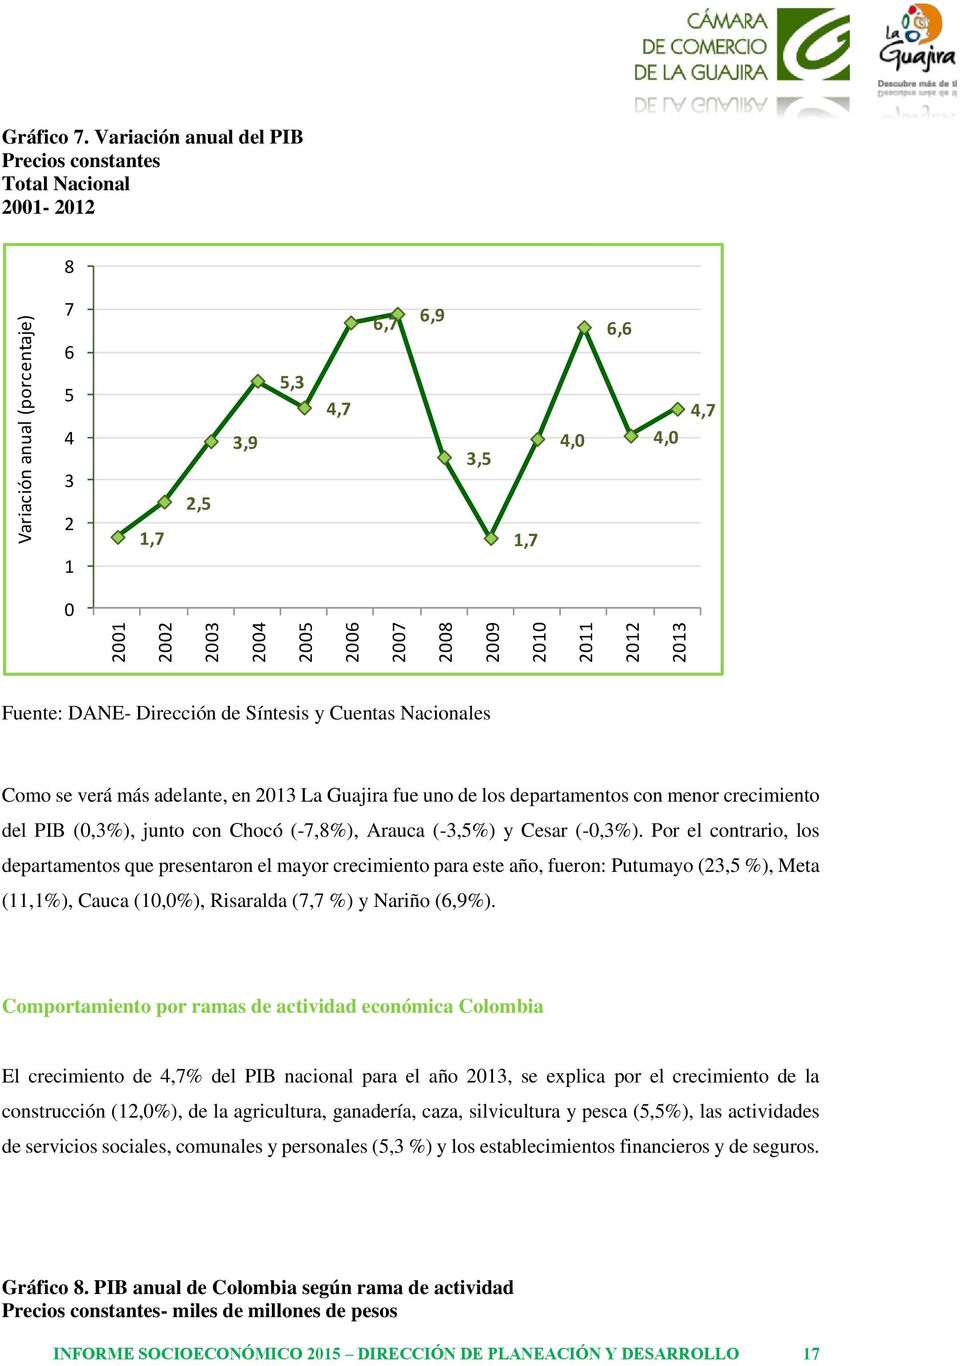 se verá más adelante, en 2013 La Guajira fue uno de los departamentos con menor crecimiento del PIB (0,3%), junto con Chocó (-7,8%), Arauca (-3,5%) y Cesar (-0,3%).